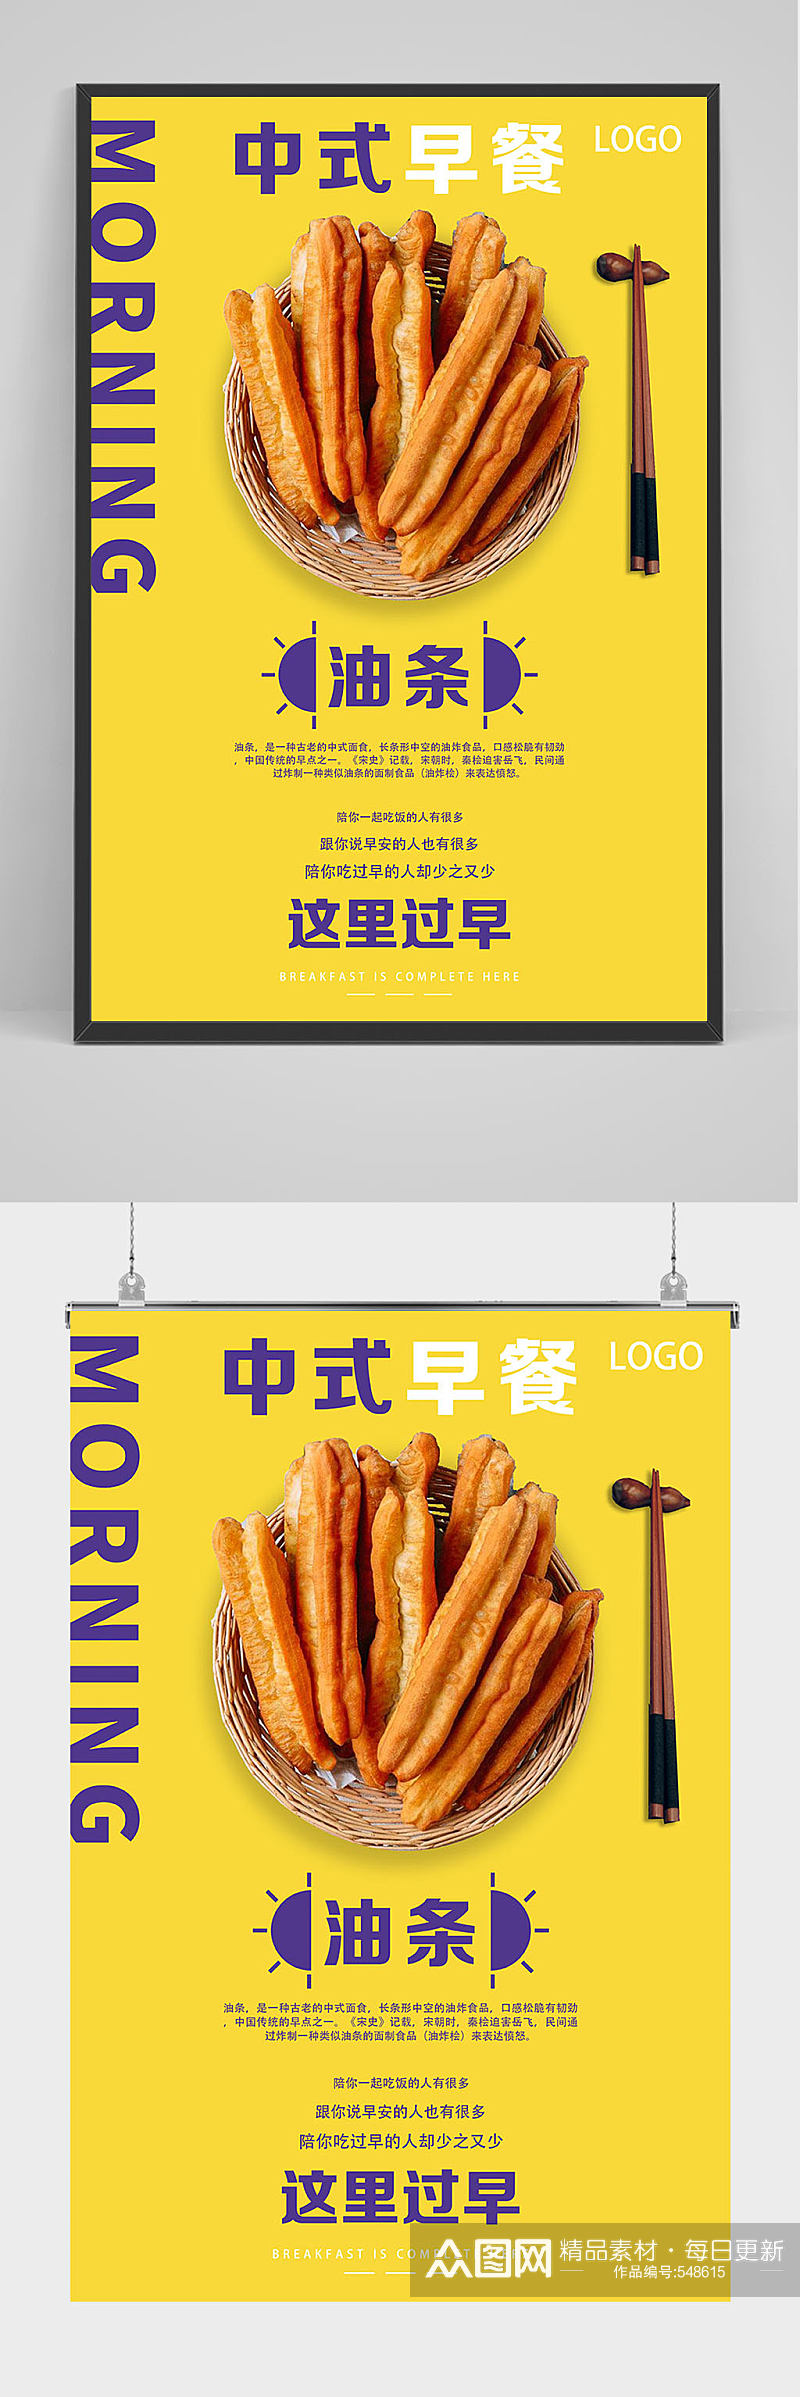 黄色系中式早餐油条海报设计素材